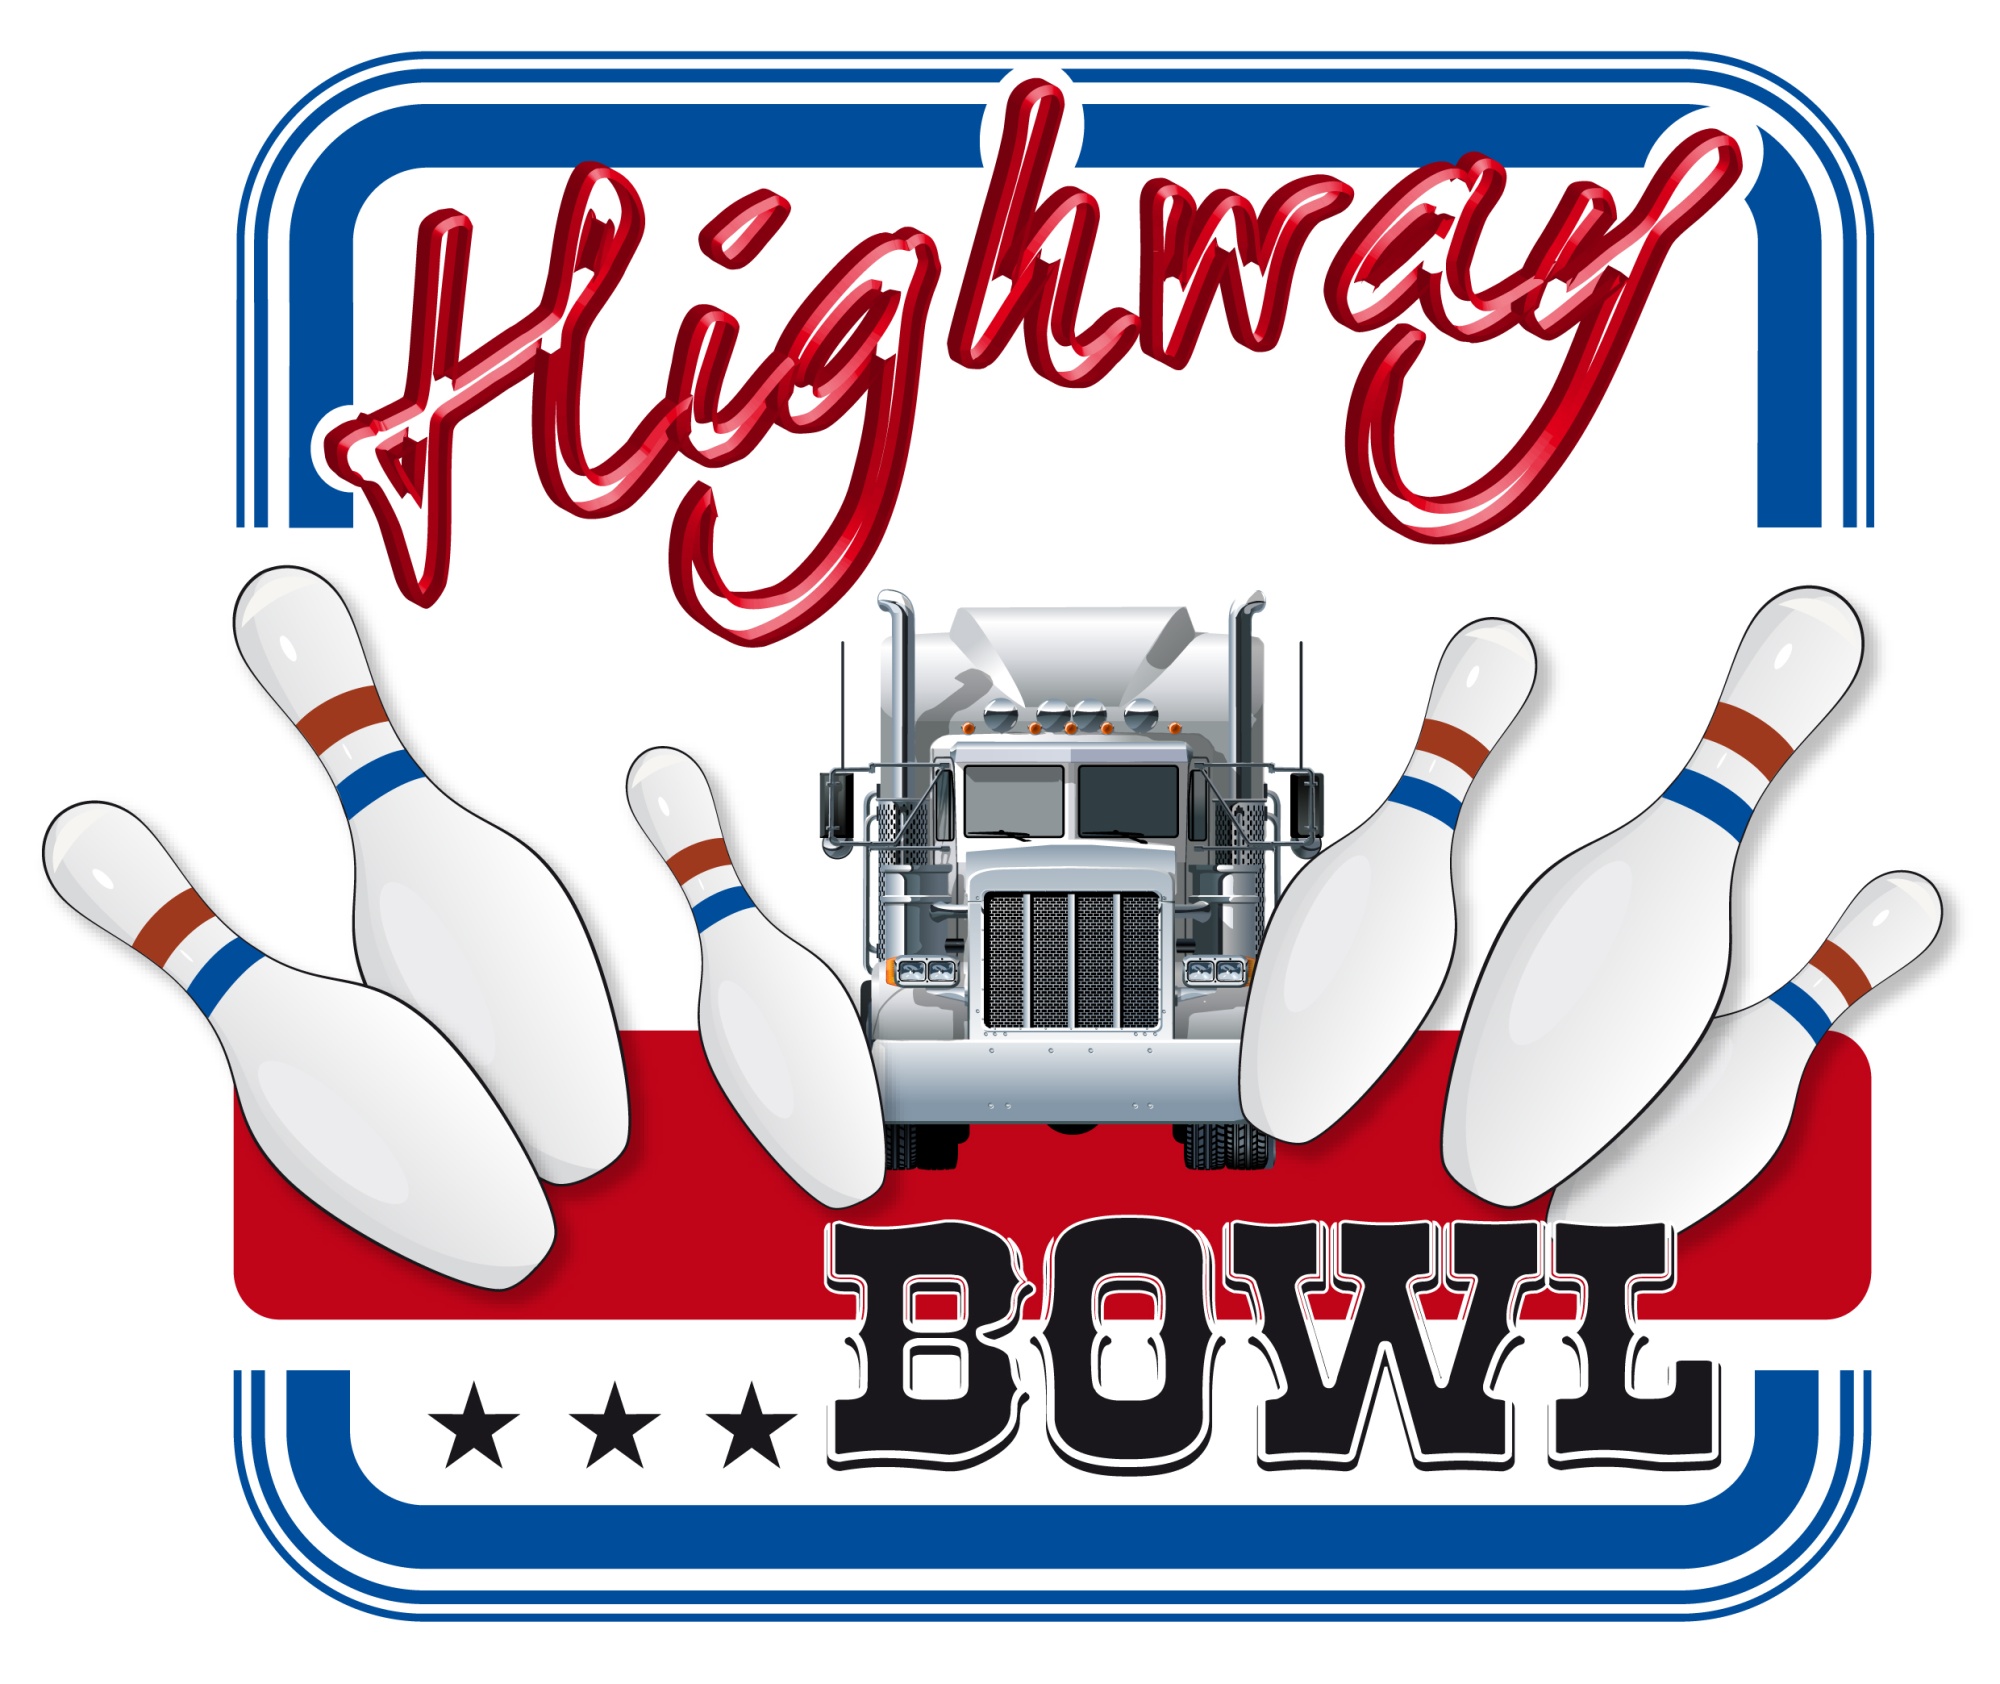 Mittig ein Truck, links und rechts Pins, die dem Truck weichen. Der Schriftzug Highway Bowl ist ebenso eingebunden. Umrahmt wird das Logo von einem blauen Rahmen.